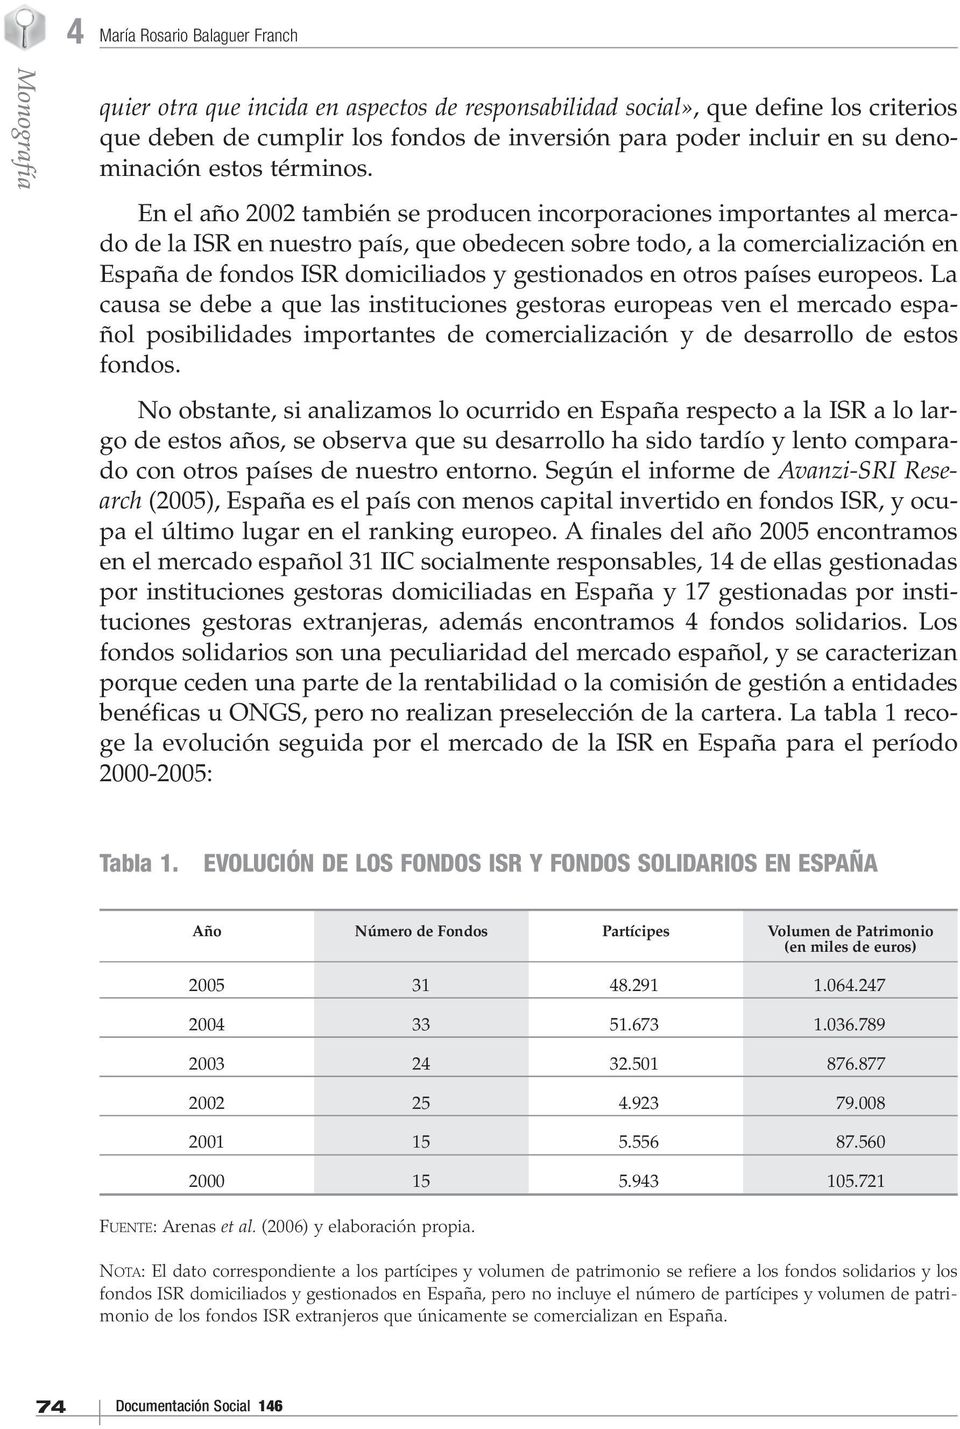 En el año 2002 también se producen incorporaciones importantes al mercado de la ISR en nuestro país, que obedecen sobre todo, a la comercialización en España de fondos ISR domiciliados y gestionados